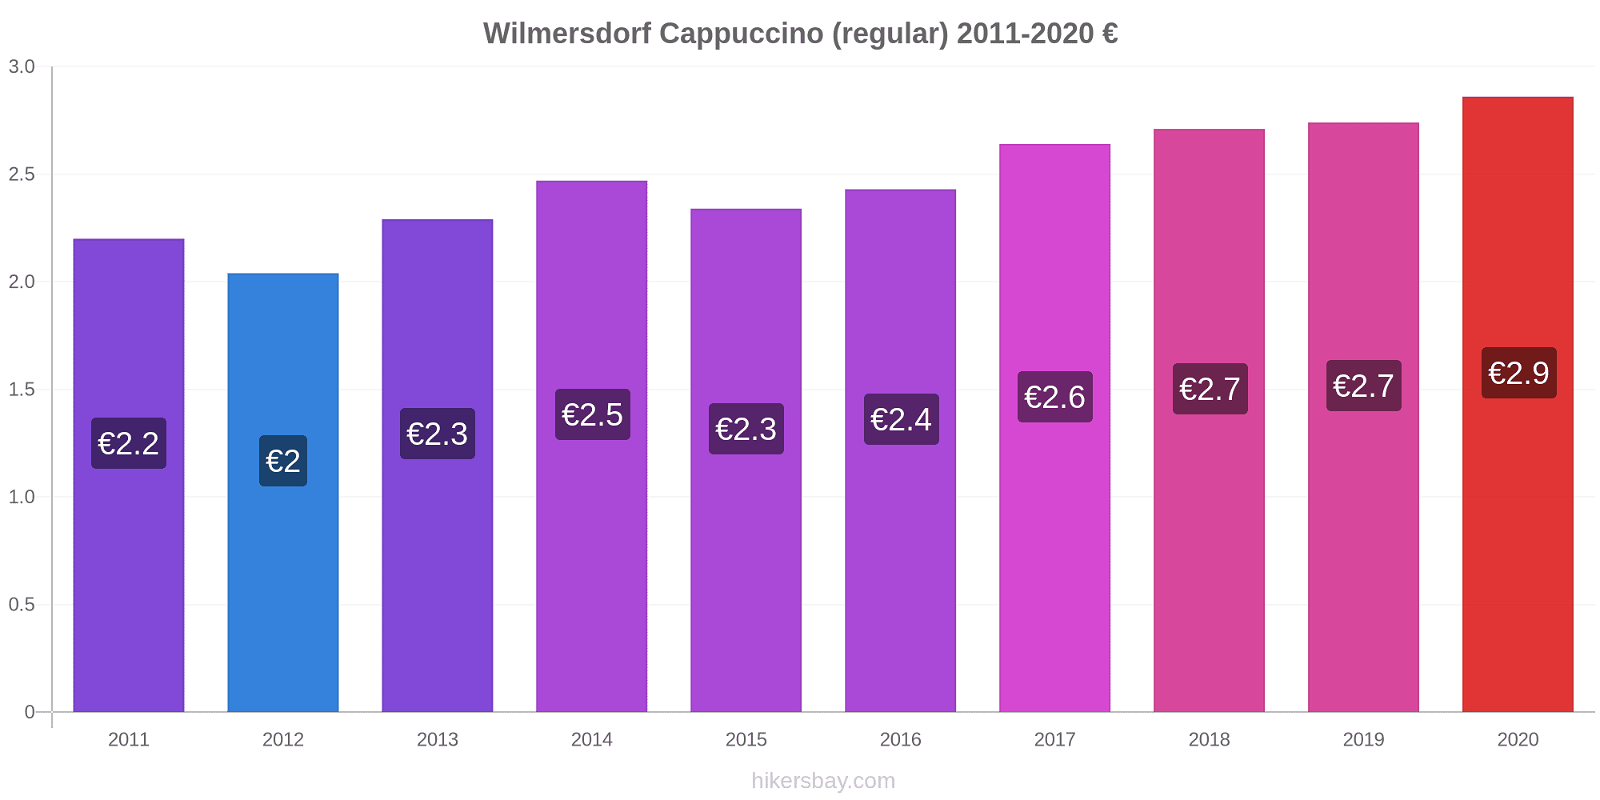 Wilmersdorf variação de preço Capuccino (regular) hikersbay.com